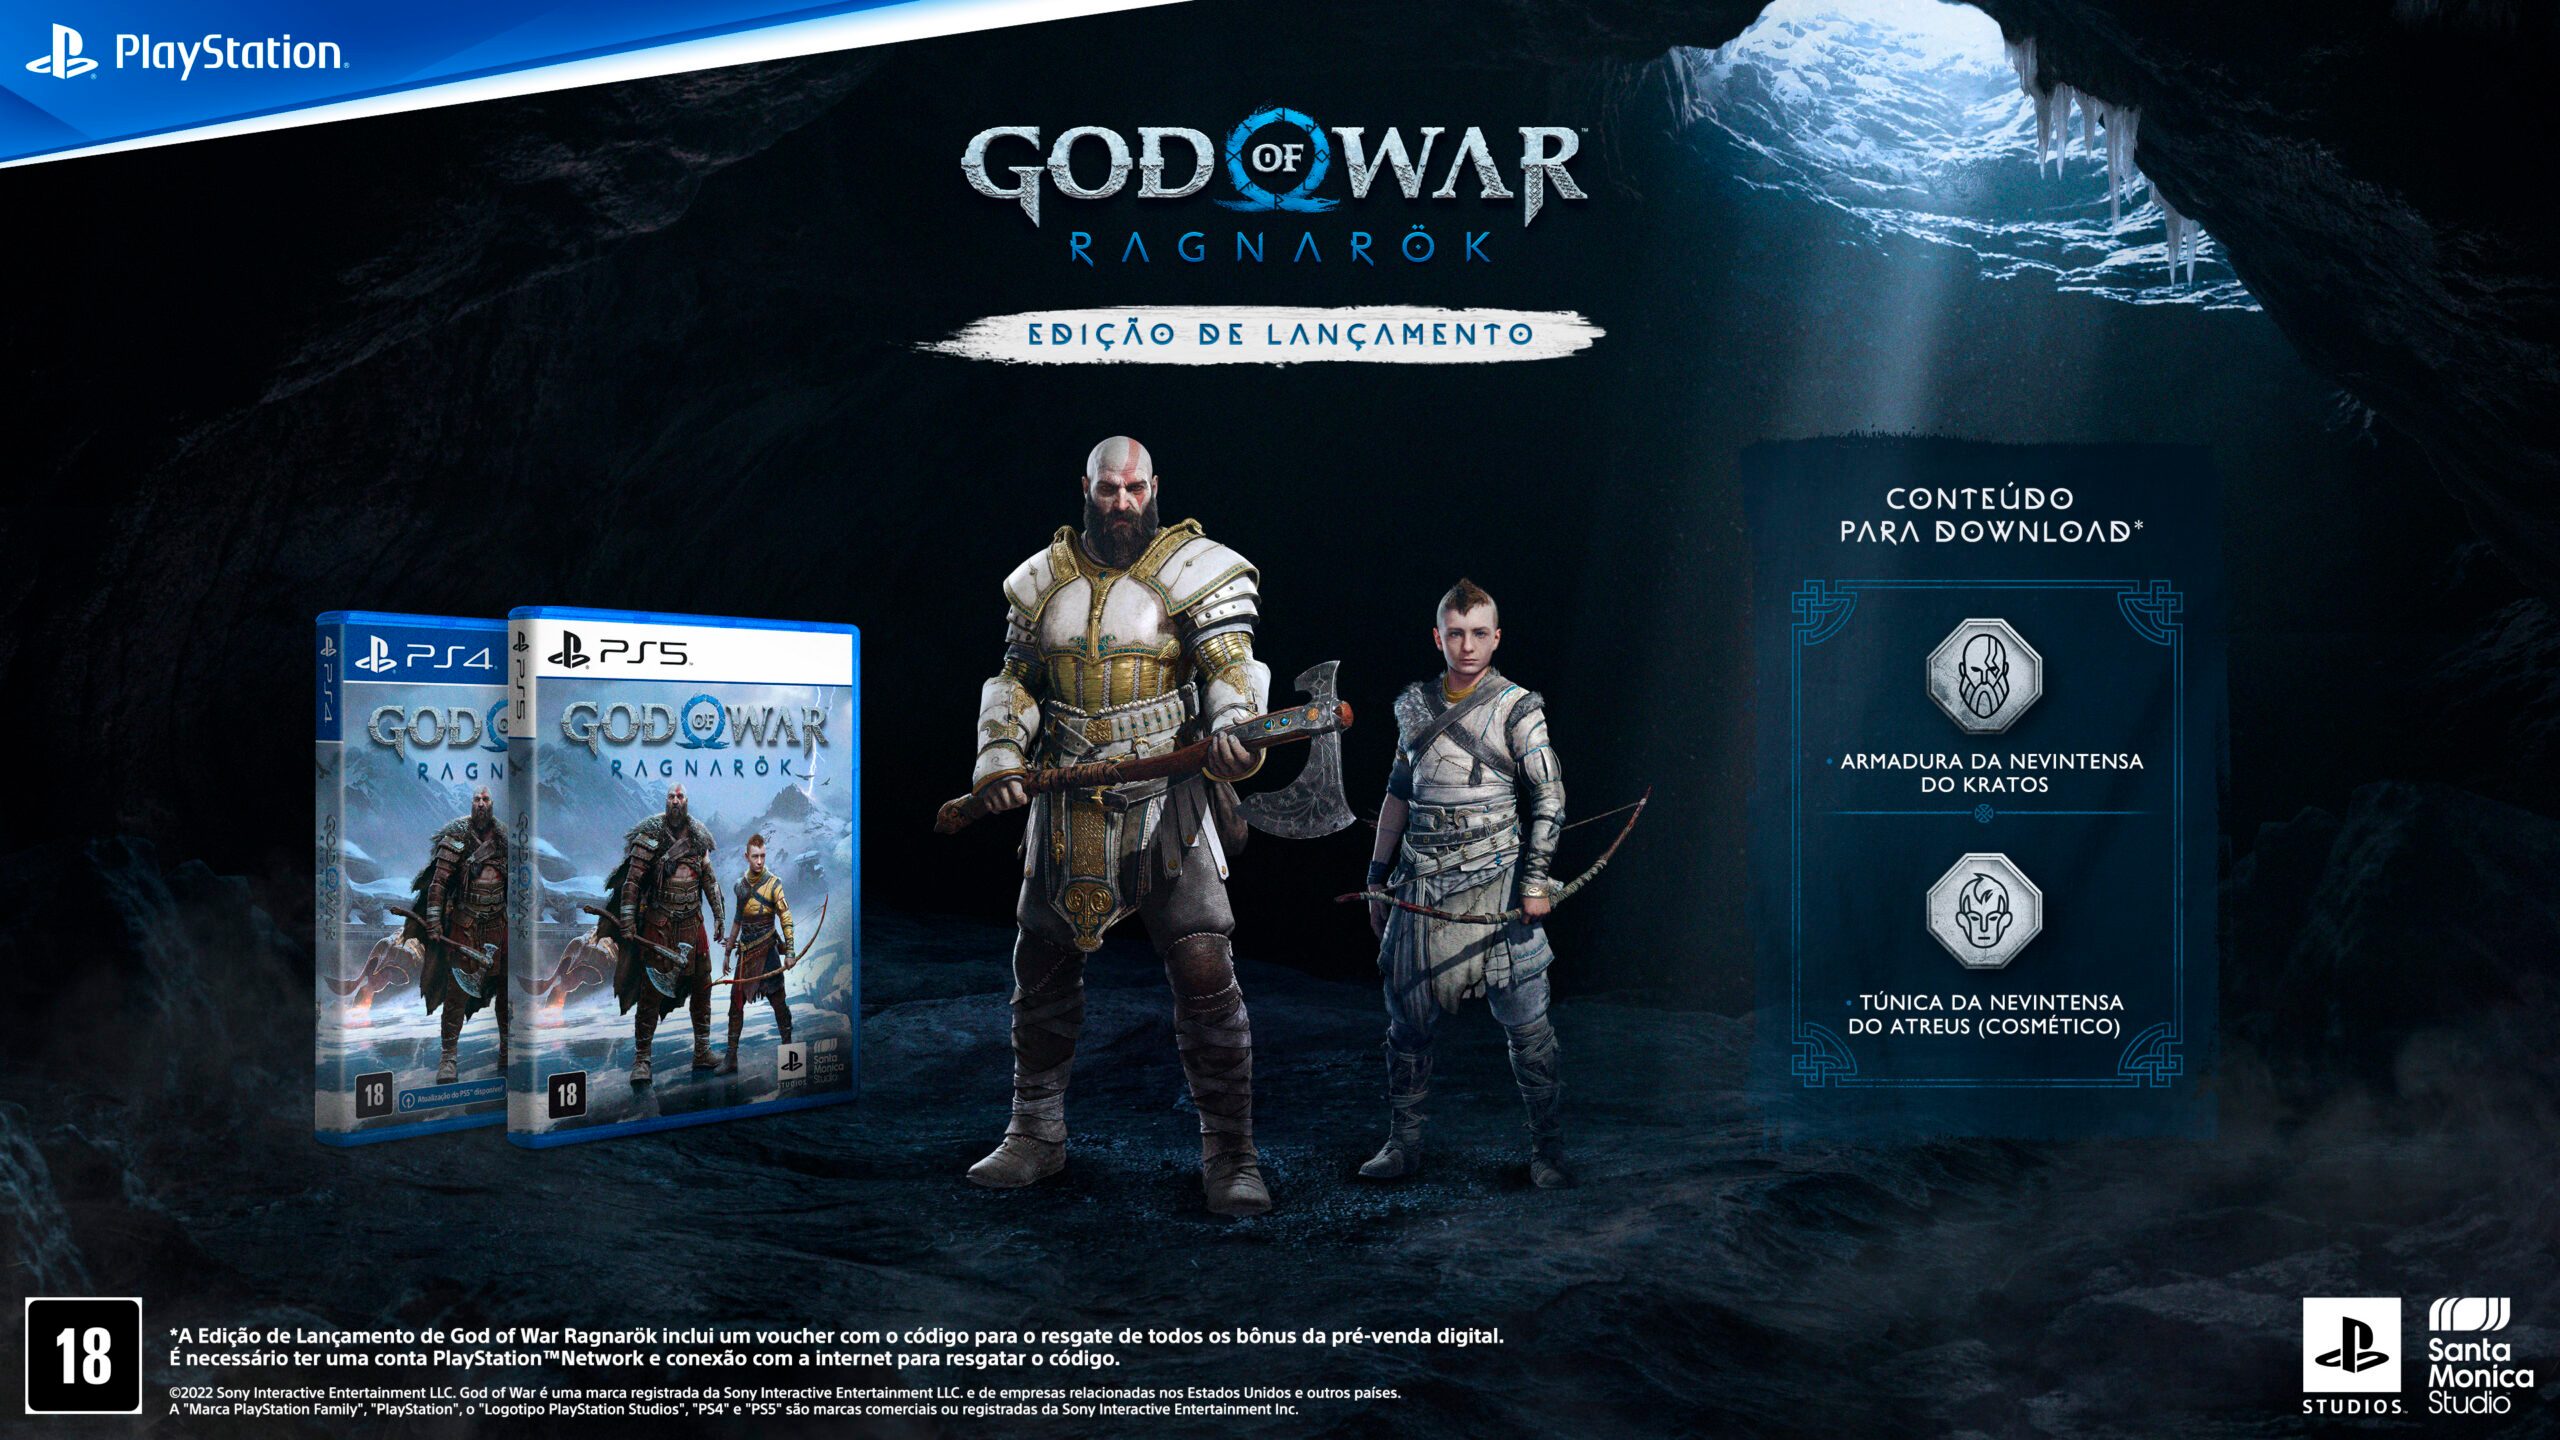 Santa Monica Studio revela requisitos detalhados para God of War PC